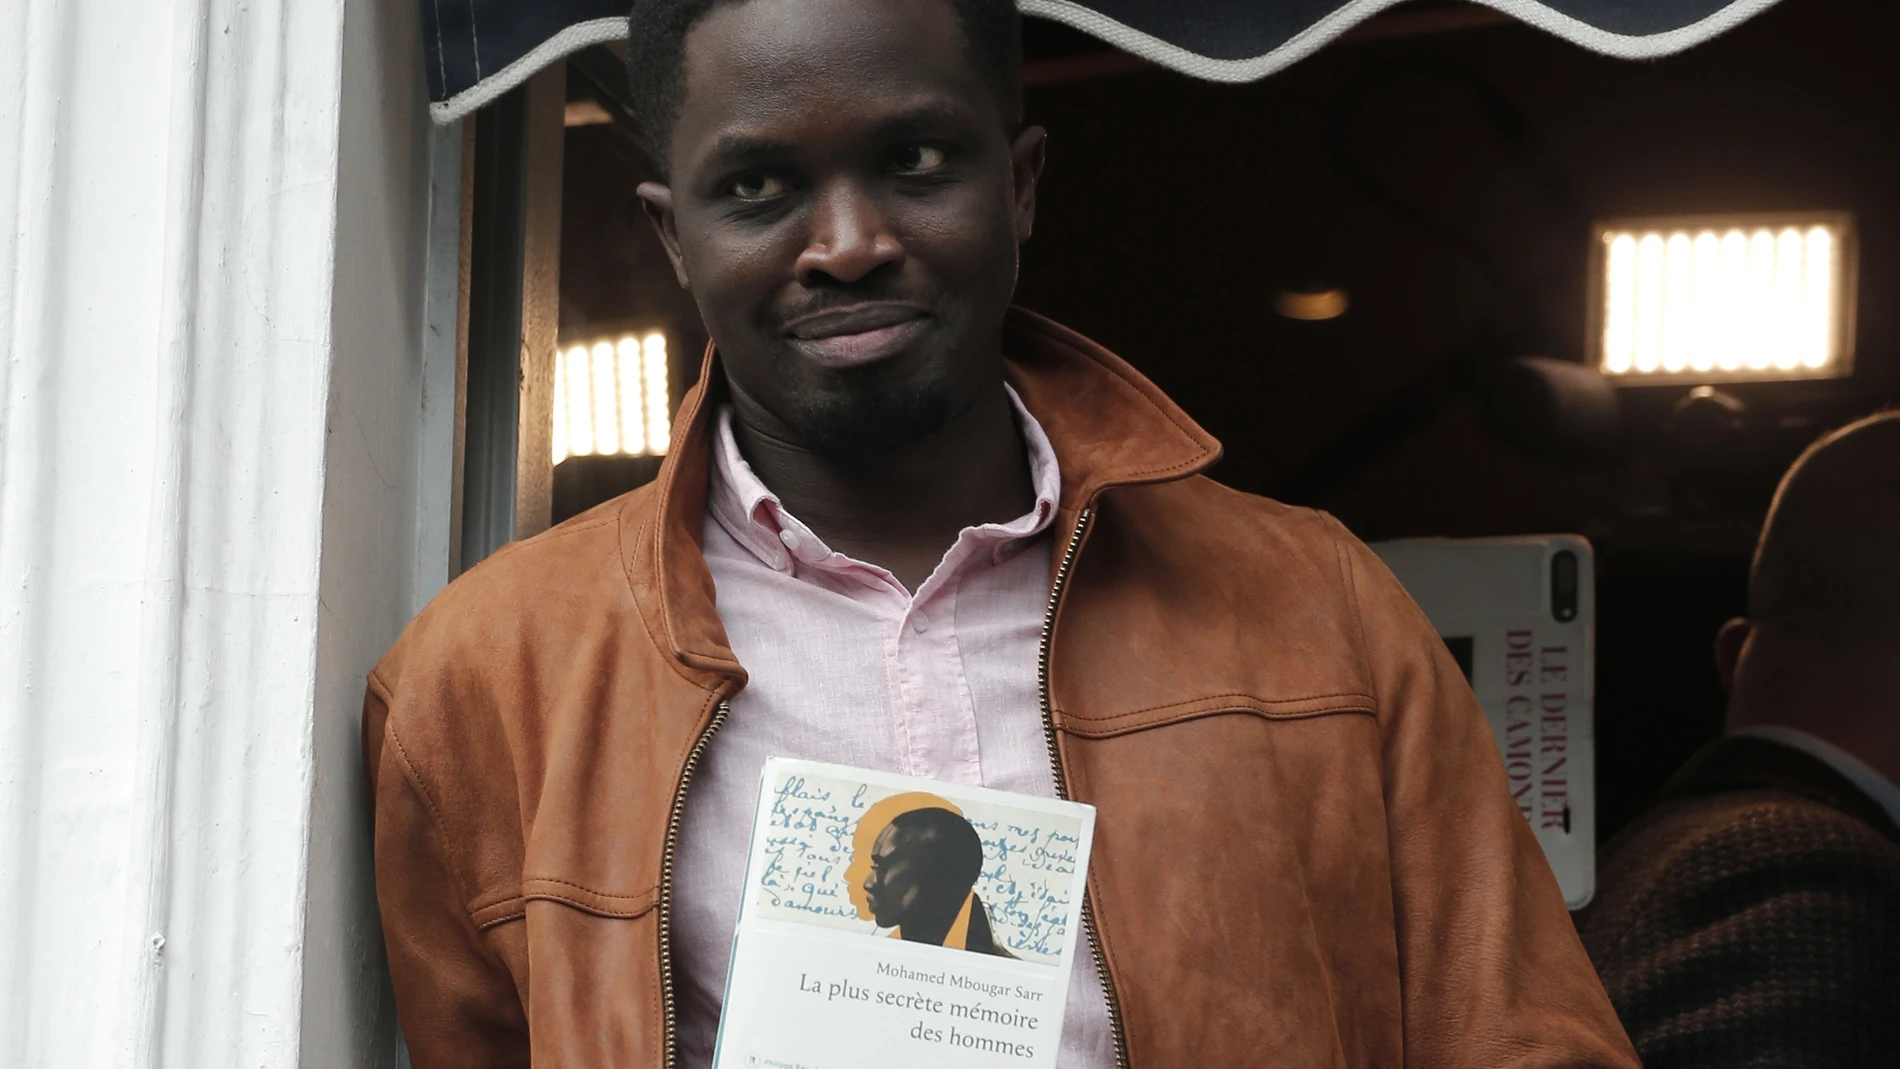 El novelista Mohamed Mbougar Sarr sostiene una copia de su libro en el balcón del restaurante parisino de Drouant